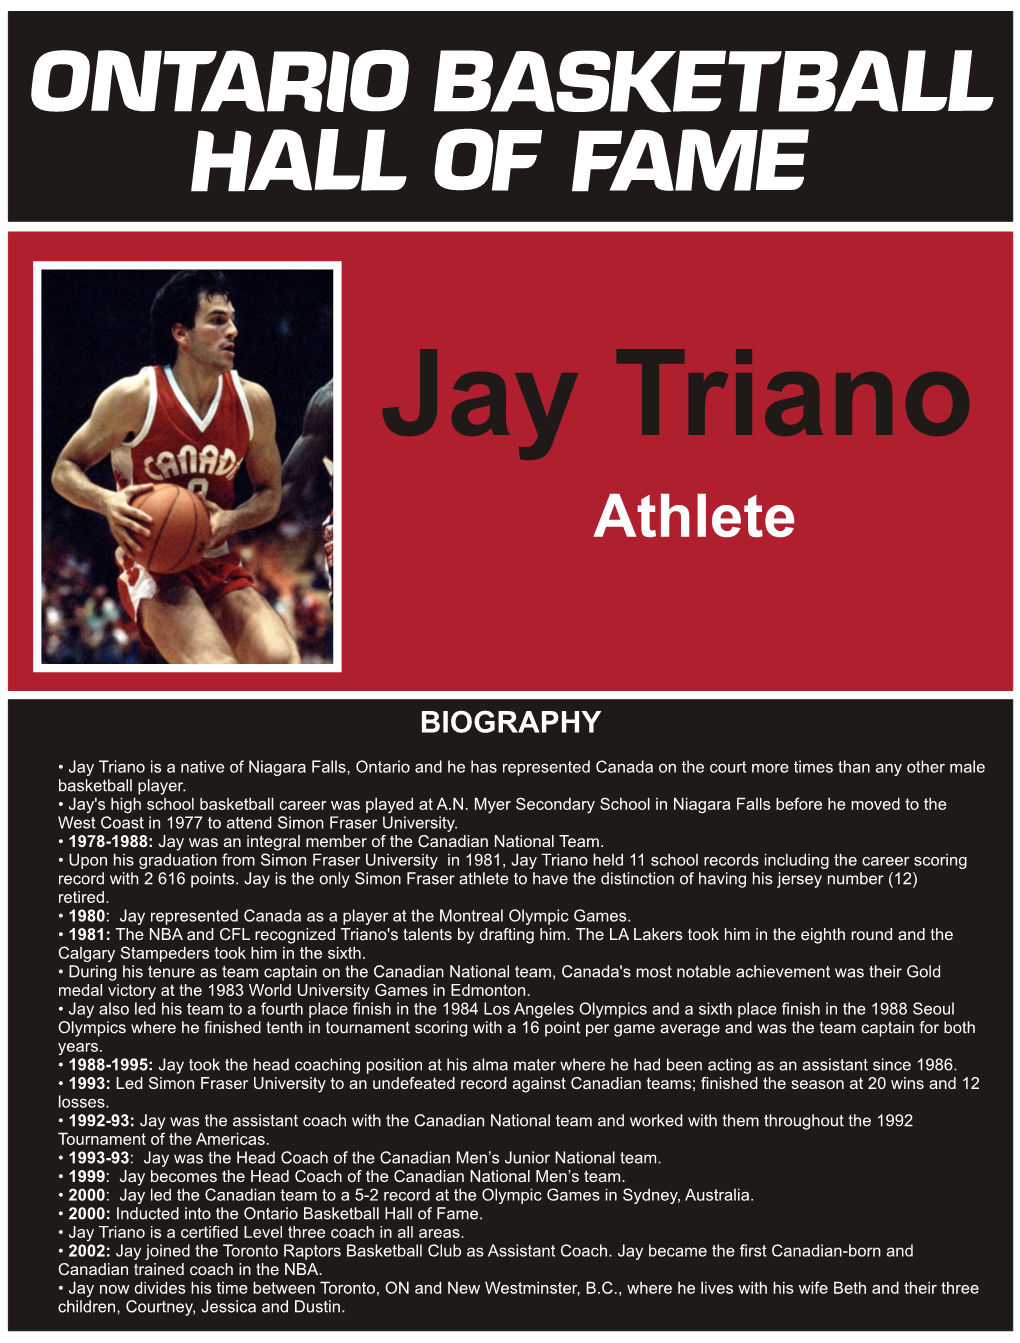 Jay Triano Athlete